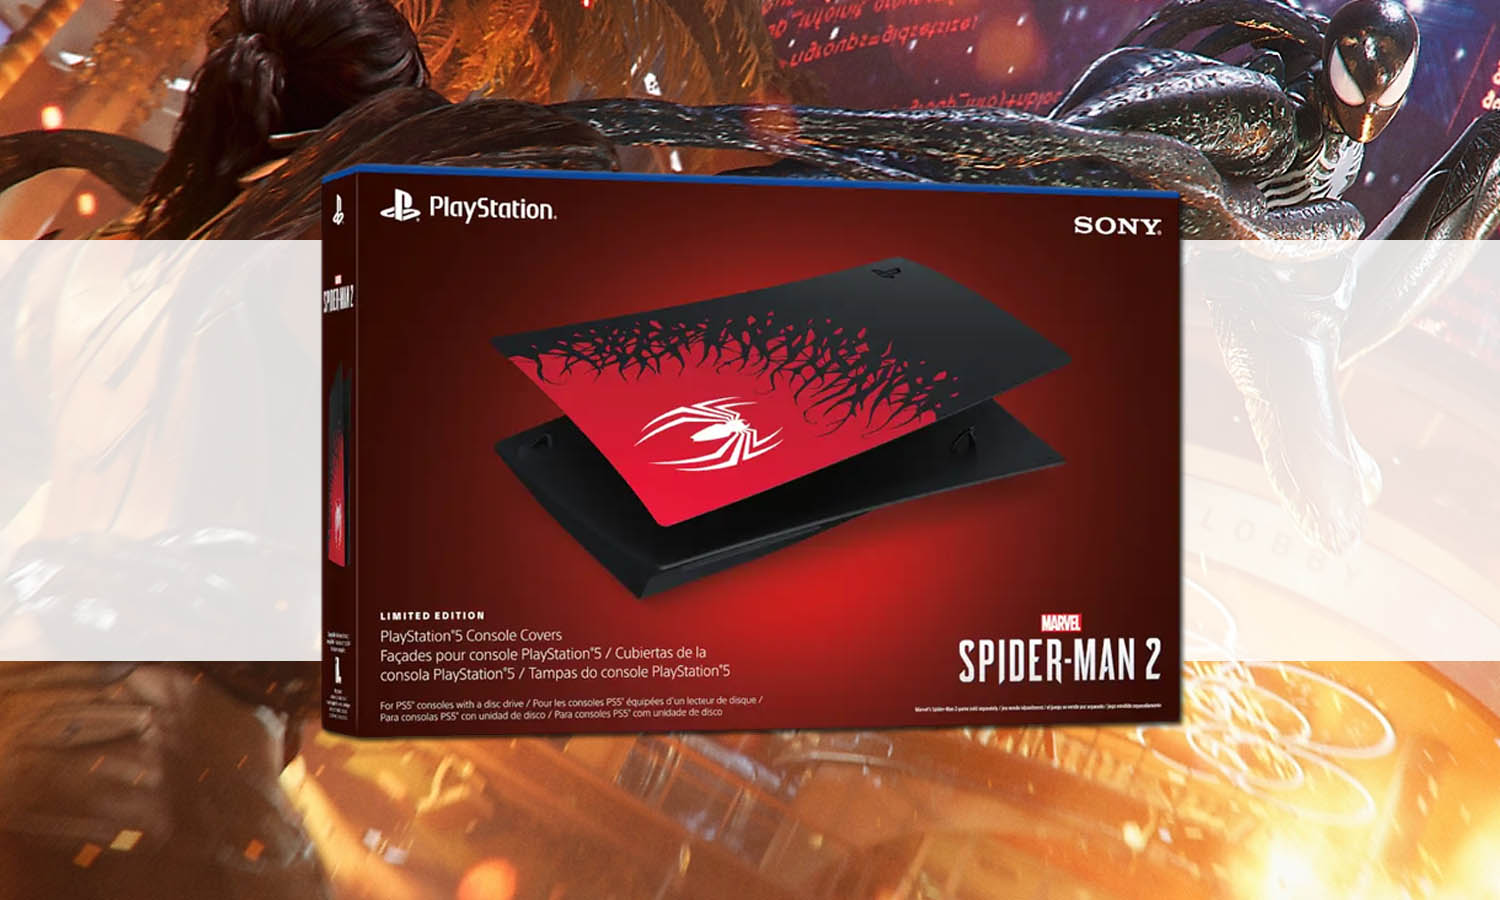 Sony PS5 Standard Spider Man 2 Édition limitée - Consoles de jeux